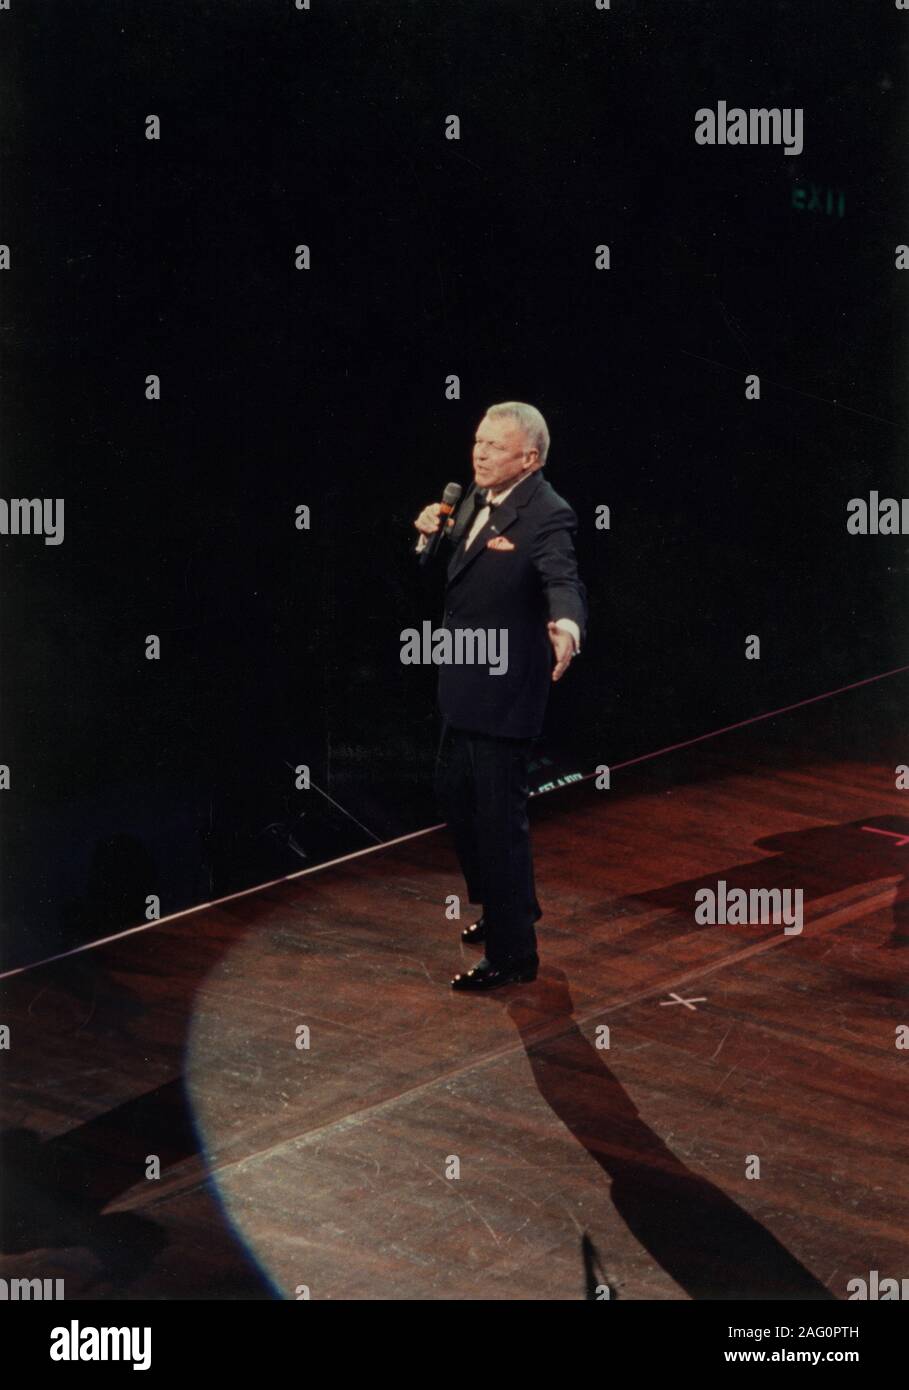 Frank Sinatra, Royal Albert Hall, Londres, 1989. En avril 1989, trois des plus grandes icônes de la musique populaire américaine, Frank Sinatra, Liza Minnelli et Sammy Davis Jr, se sont réunis à Frank, Liza et Sammy : l'ultime épreuve. Banque D'Images